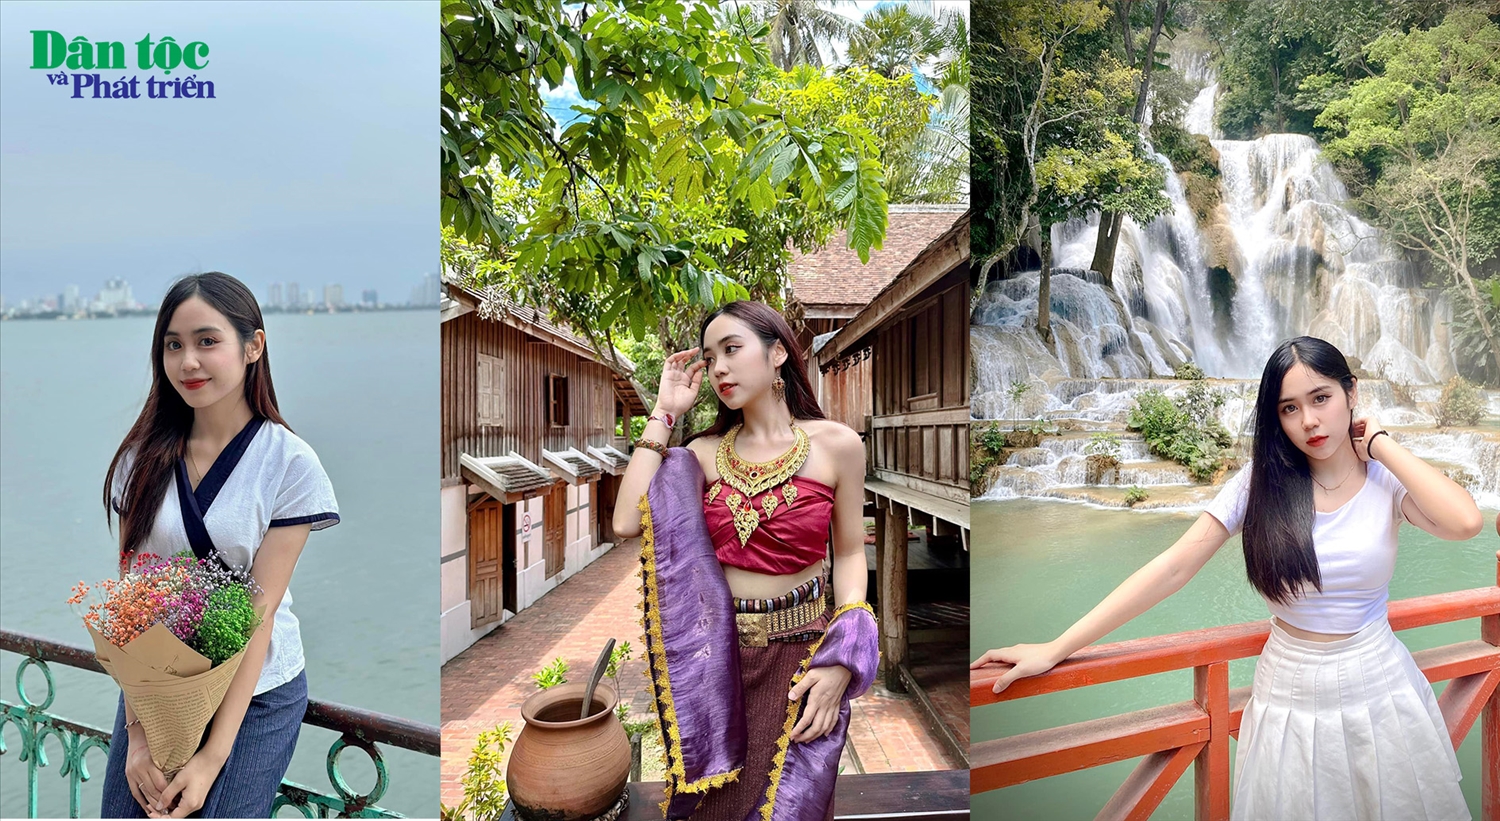 Maysa mong muốn được đi nhiều nơi hơn nữa để trải nghiệm cuộc sống và văn hóa tại Việt Nam